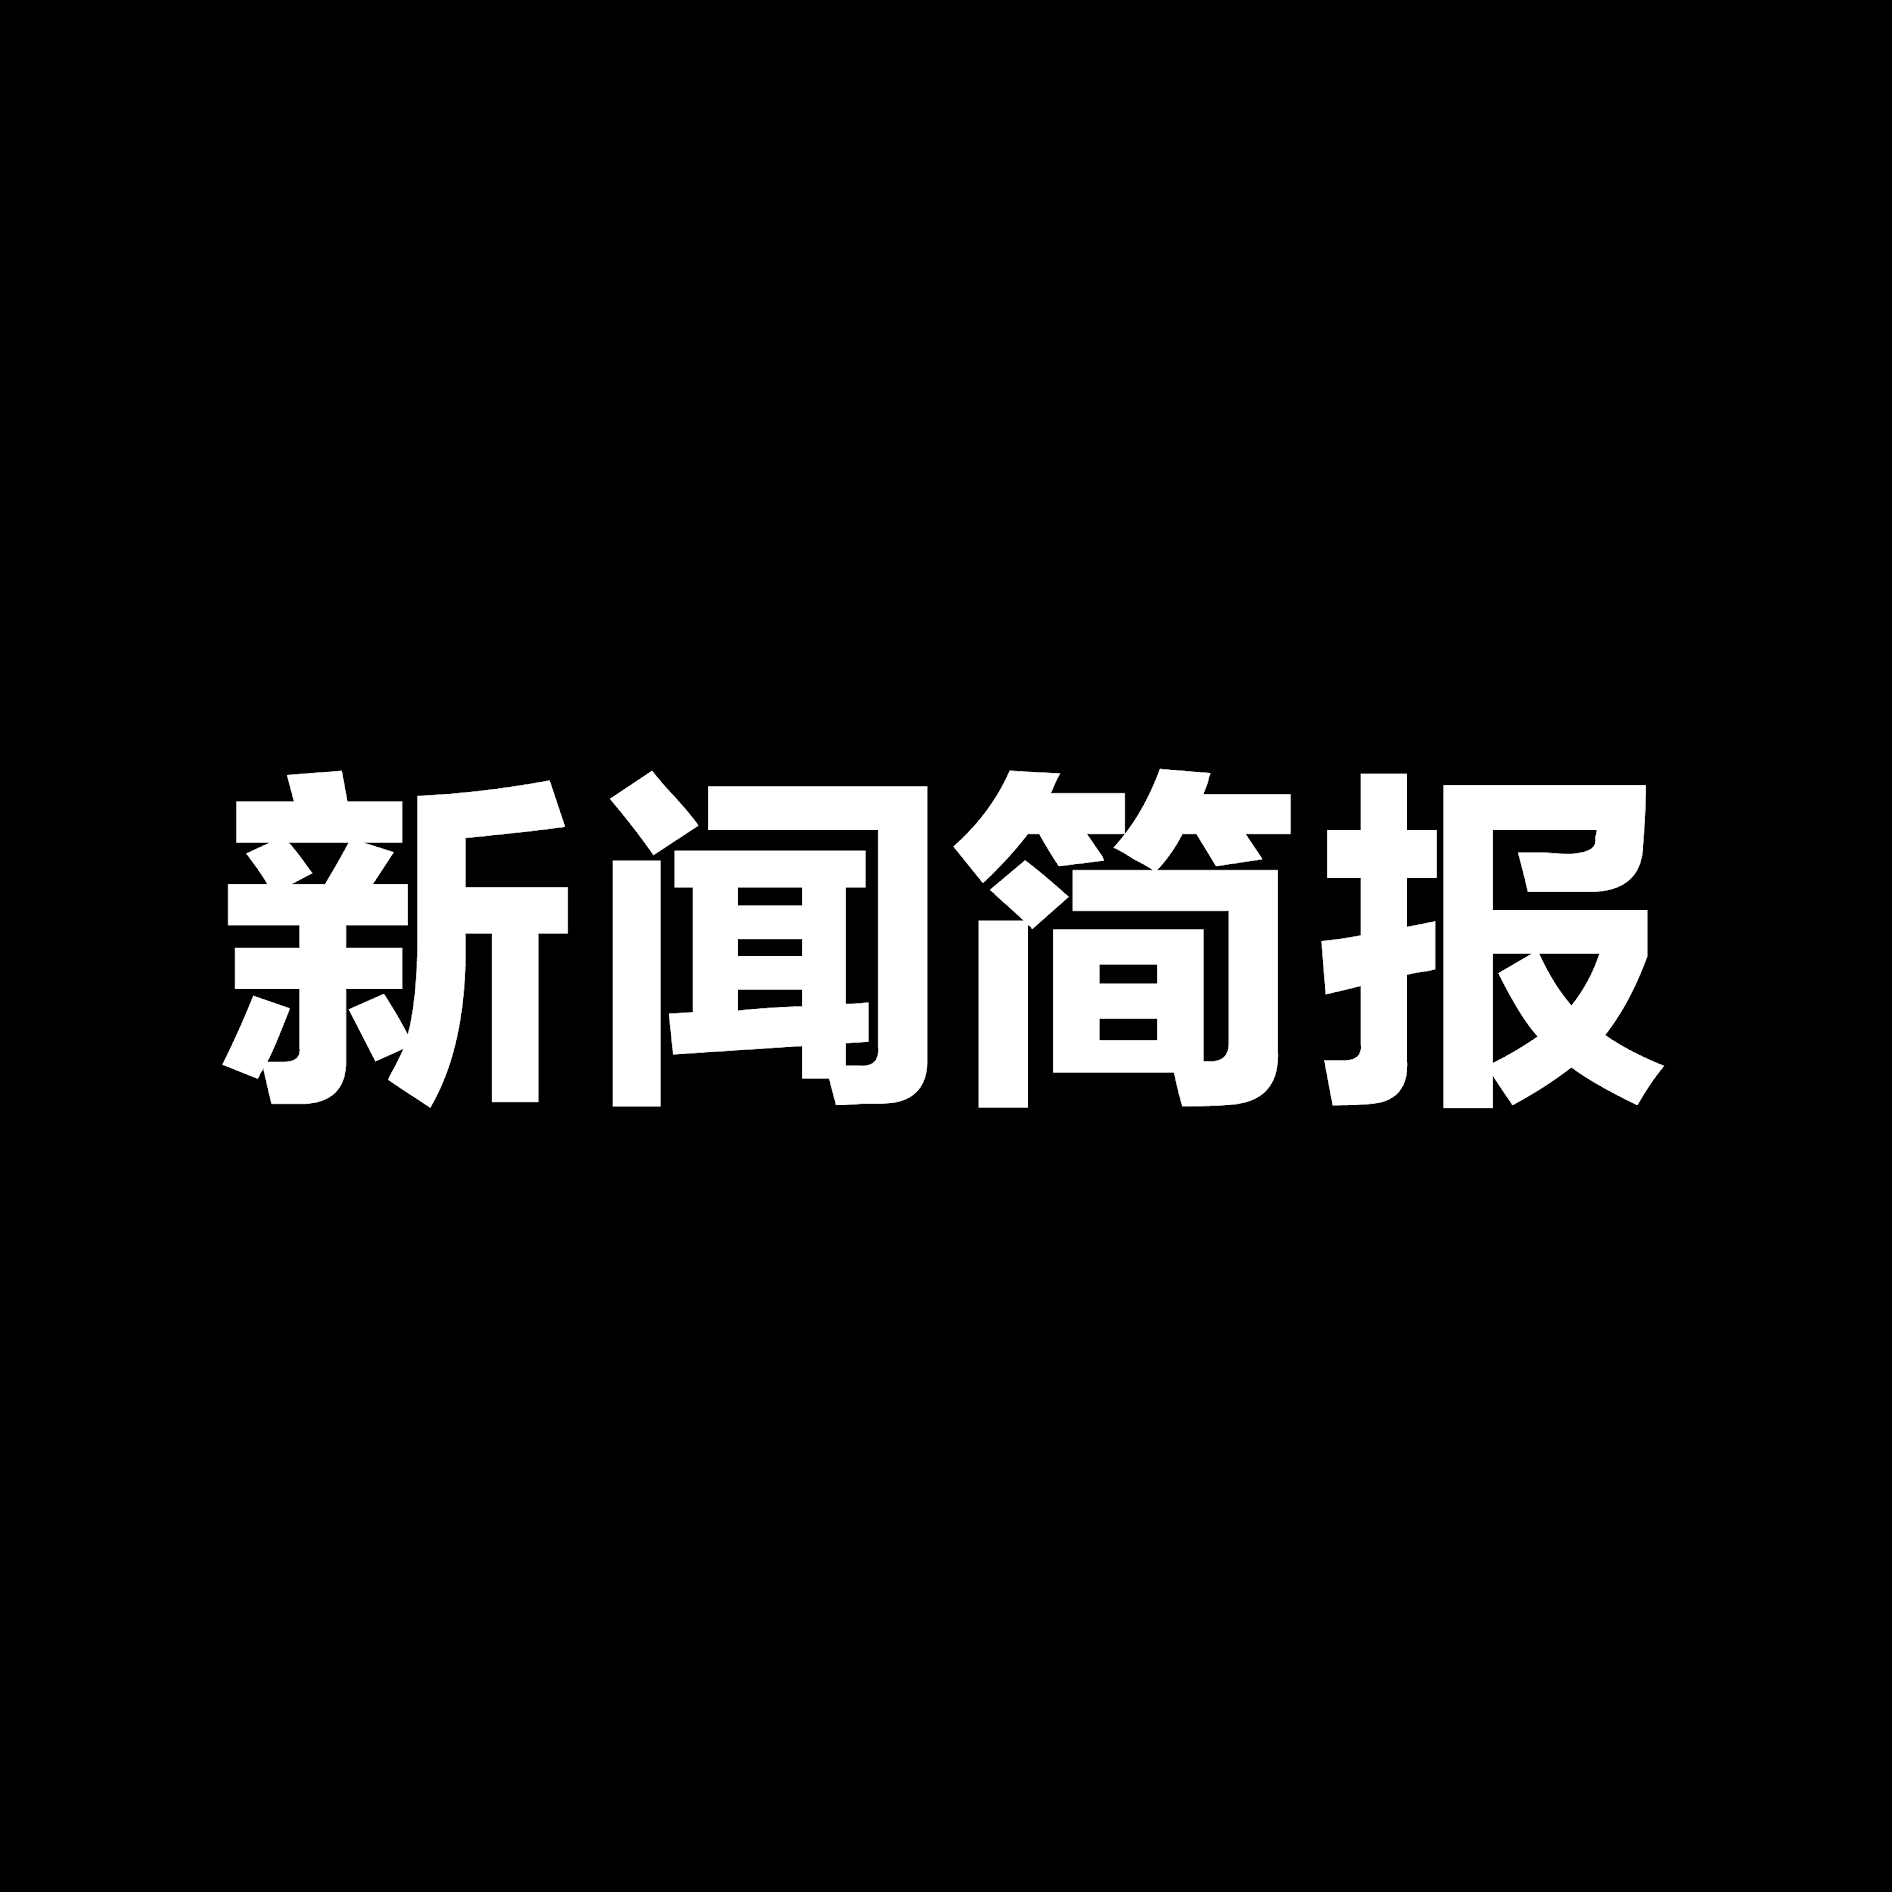 流行樂之王 變態之王 紐約時報中文網